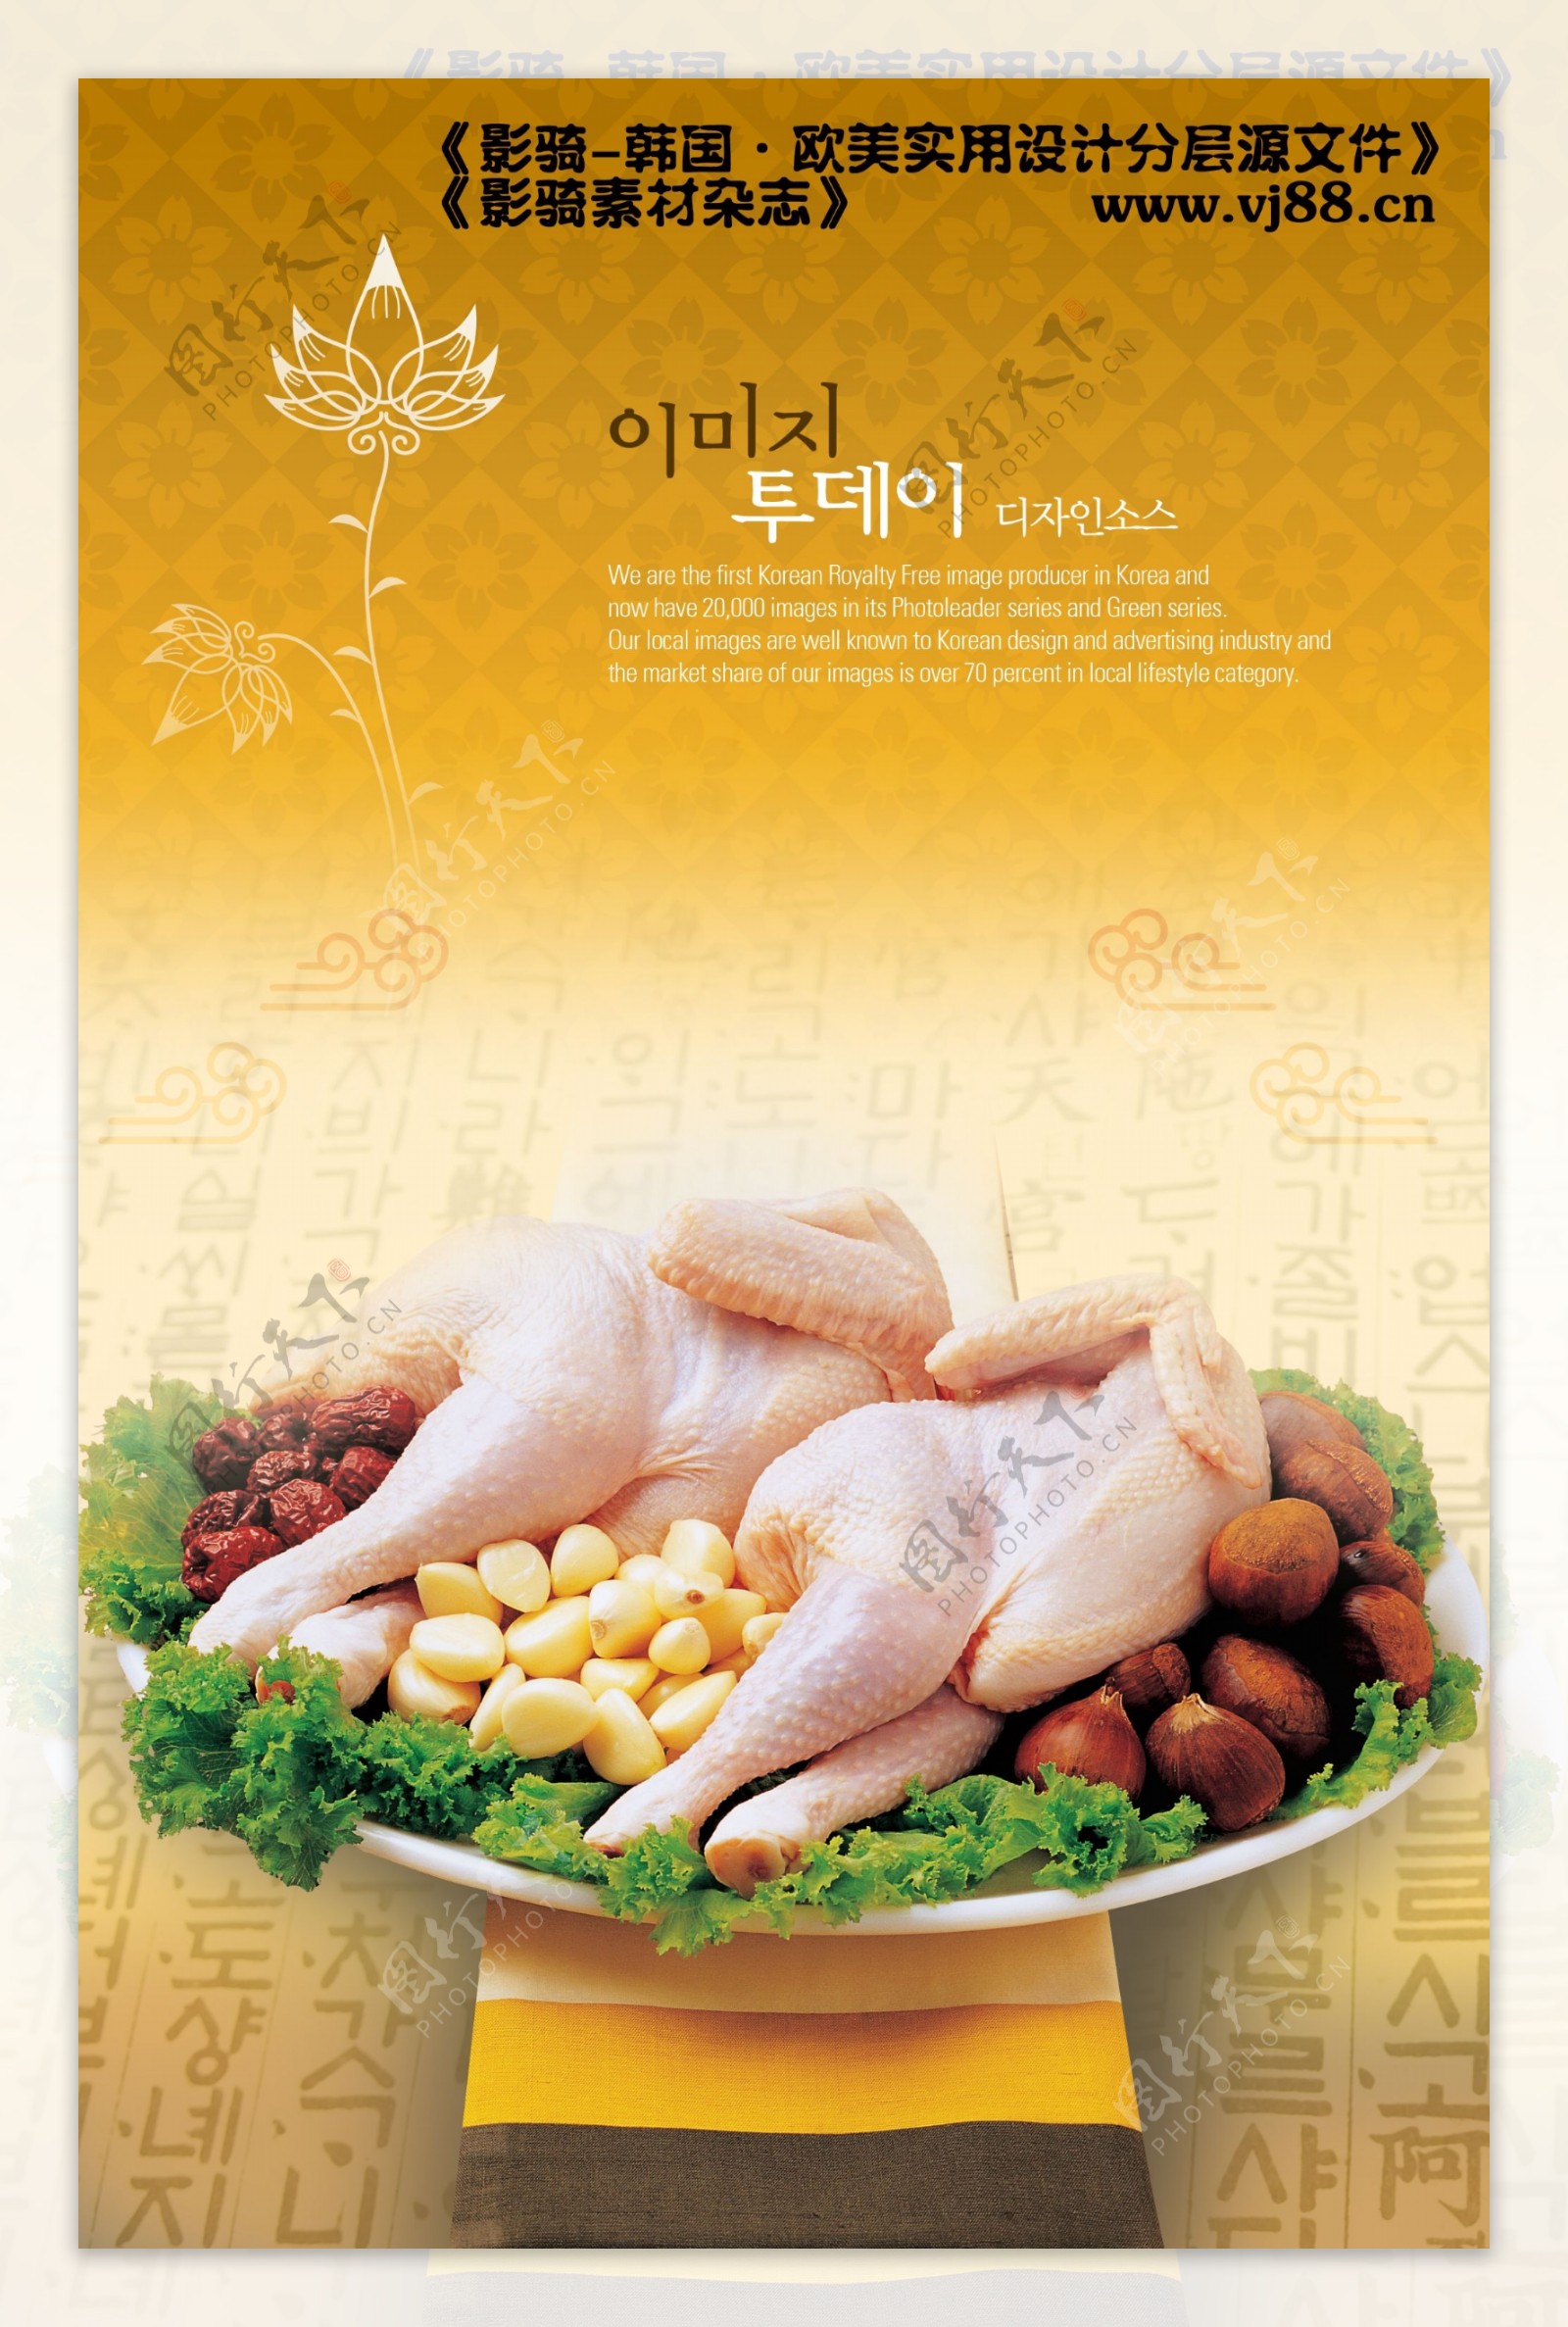 韩式养生菜谱